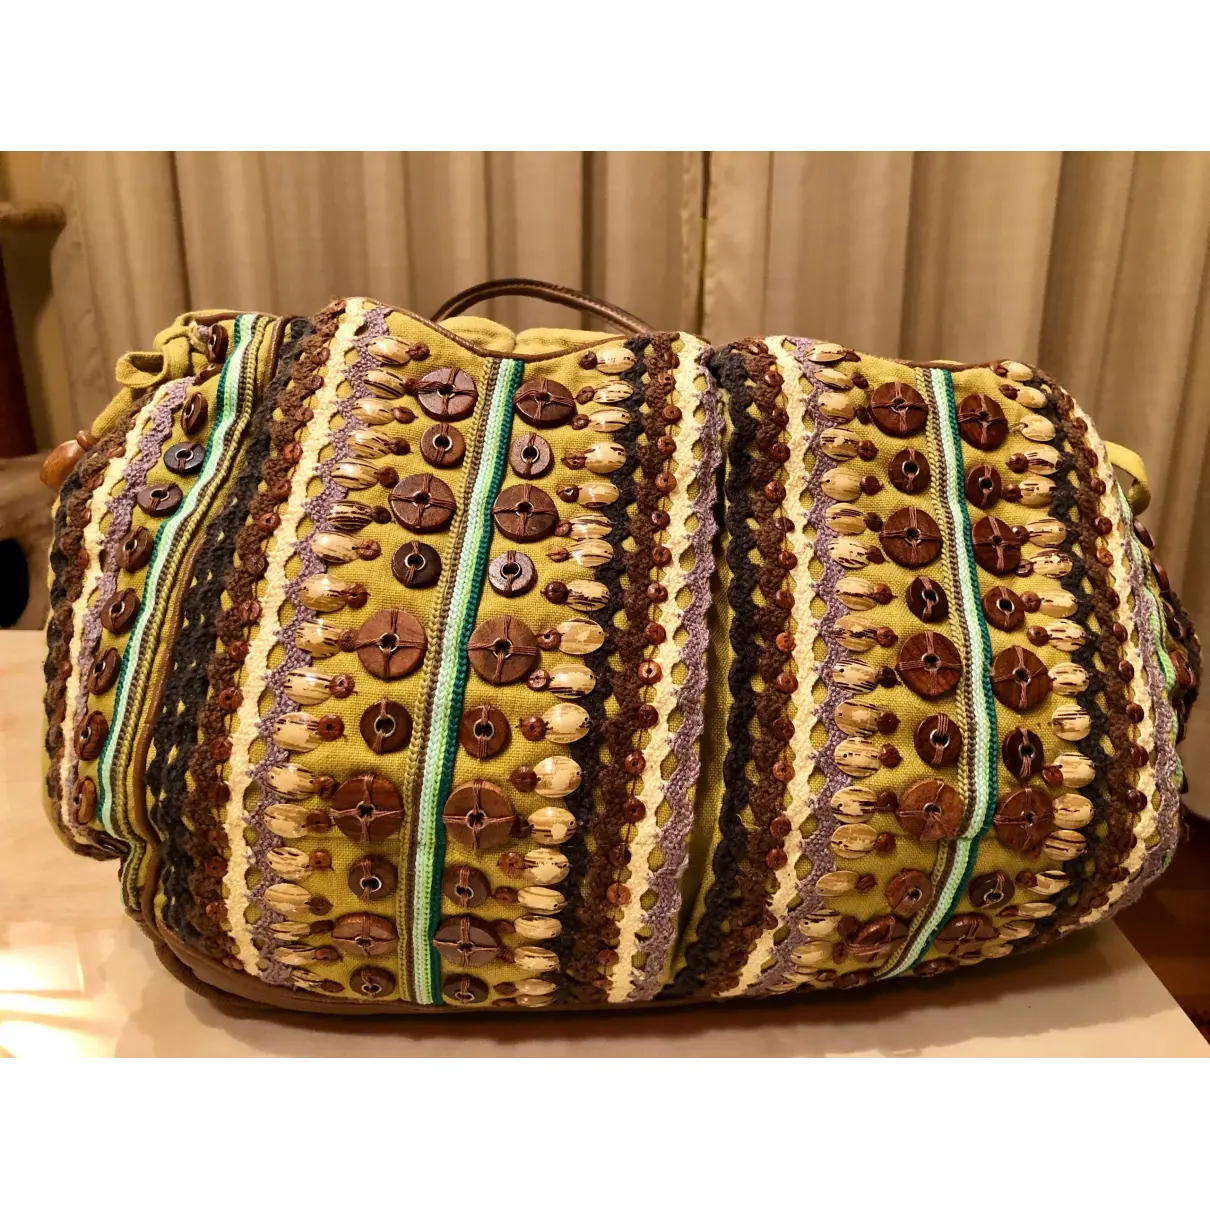 Buy Jamin Puech Handbag online